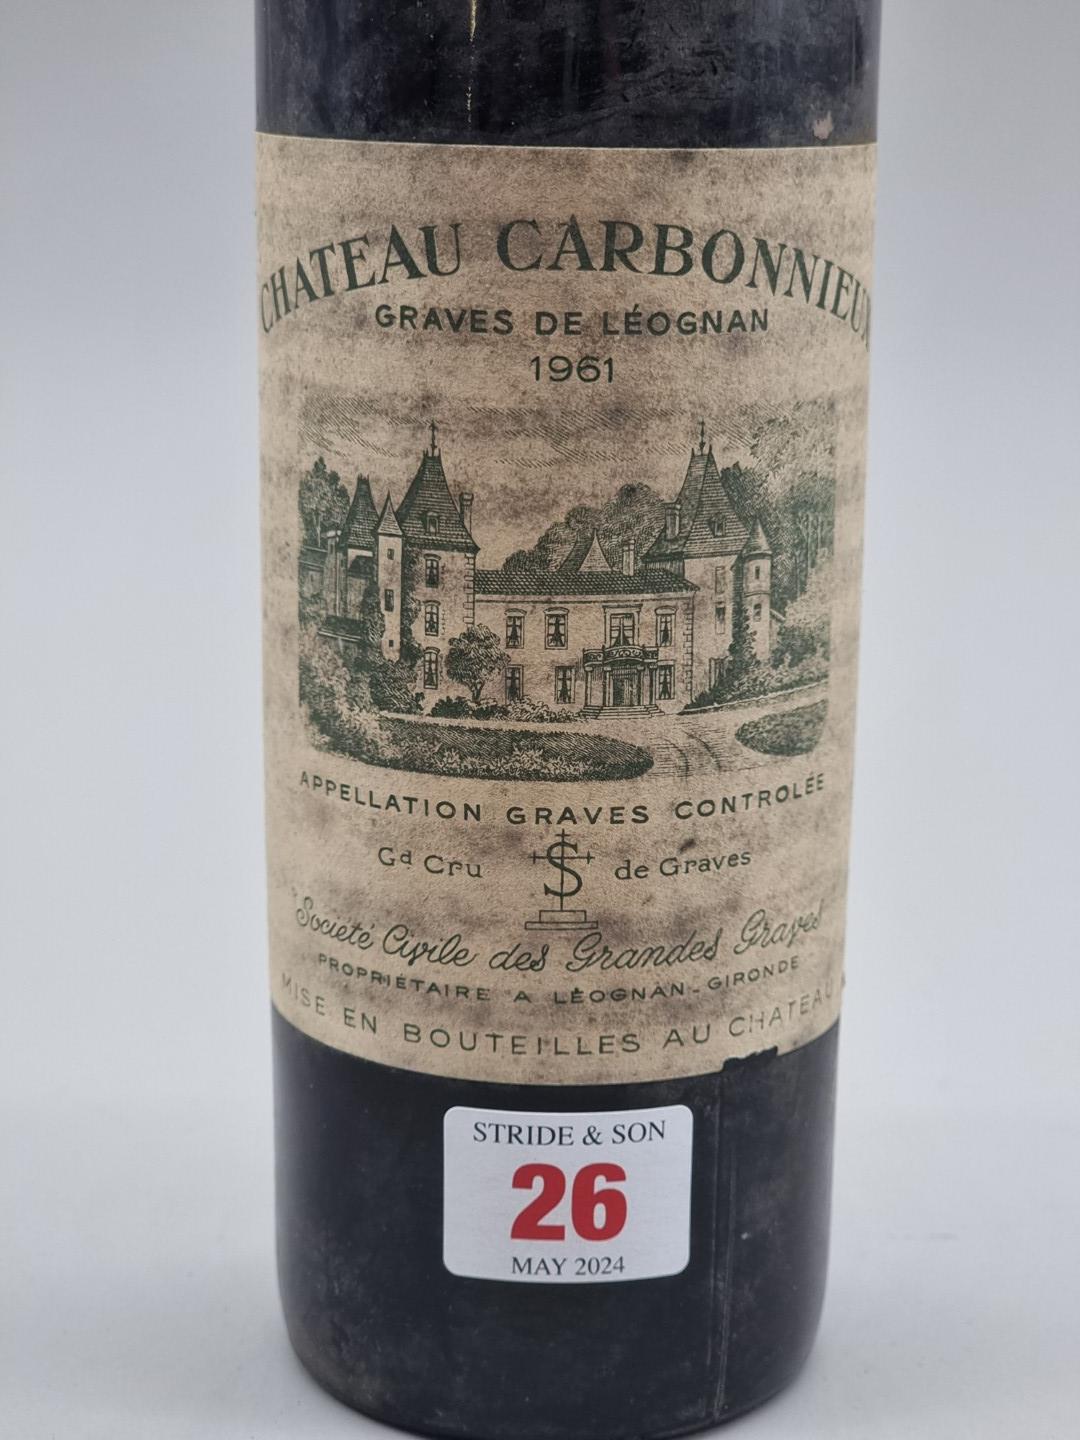 A 75cl bottle of Chateau Cabonnieux, Graves de Leognan, 1961. - Bild 2 aus 5